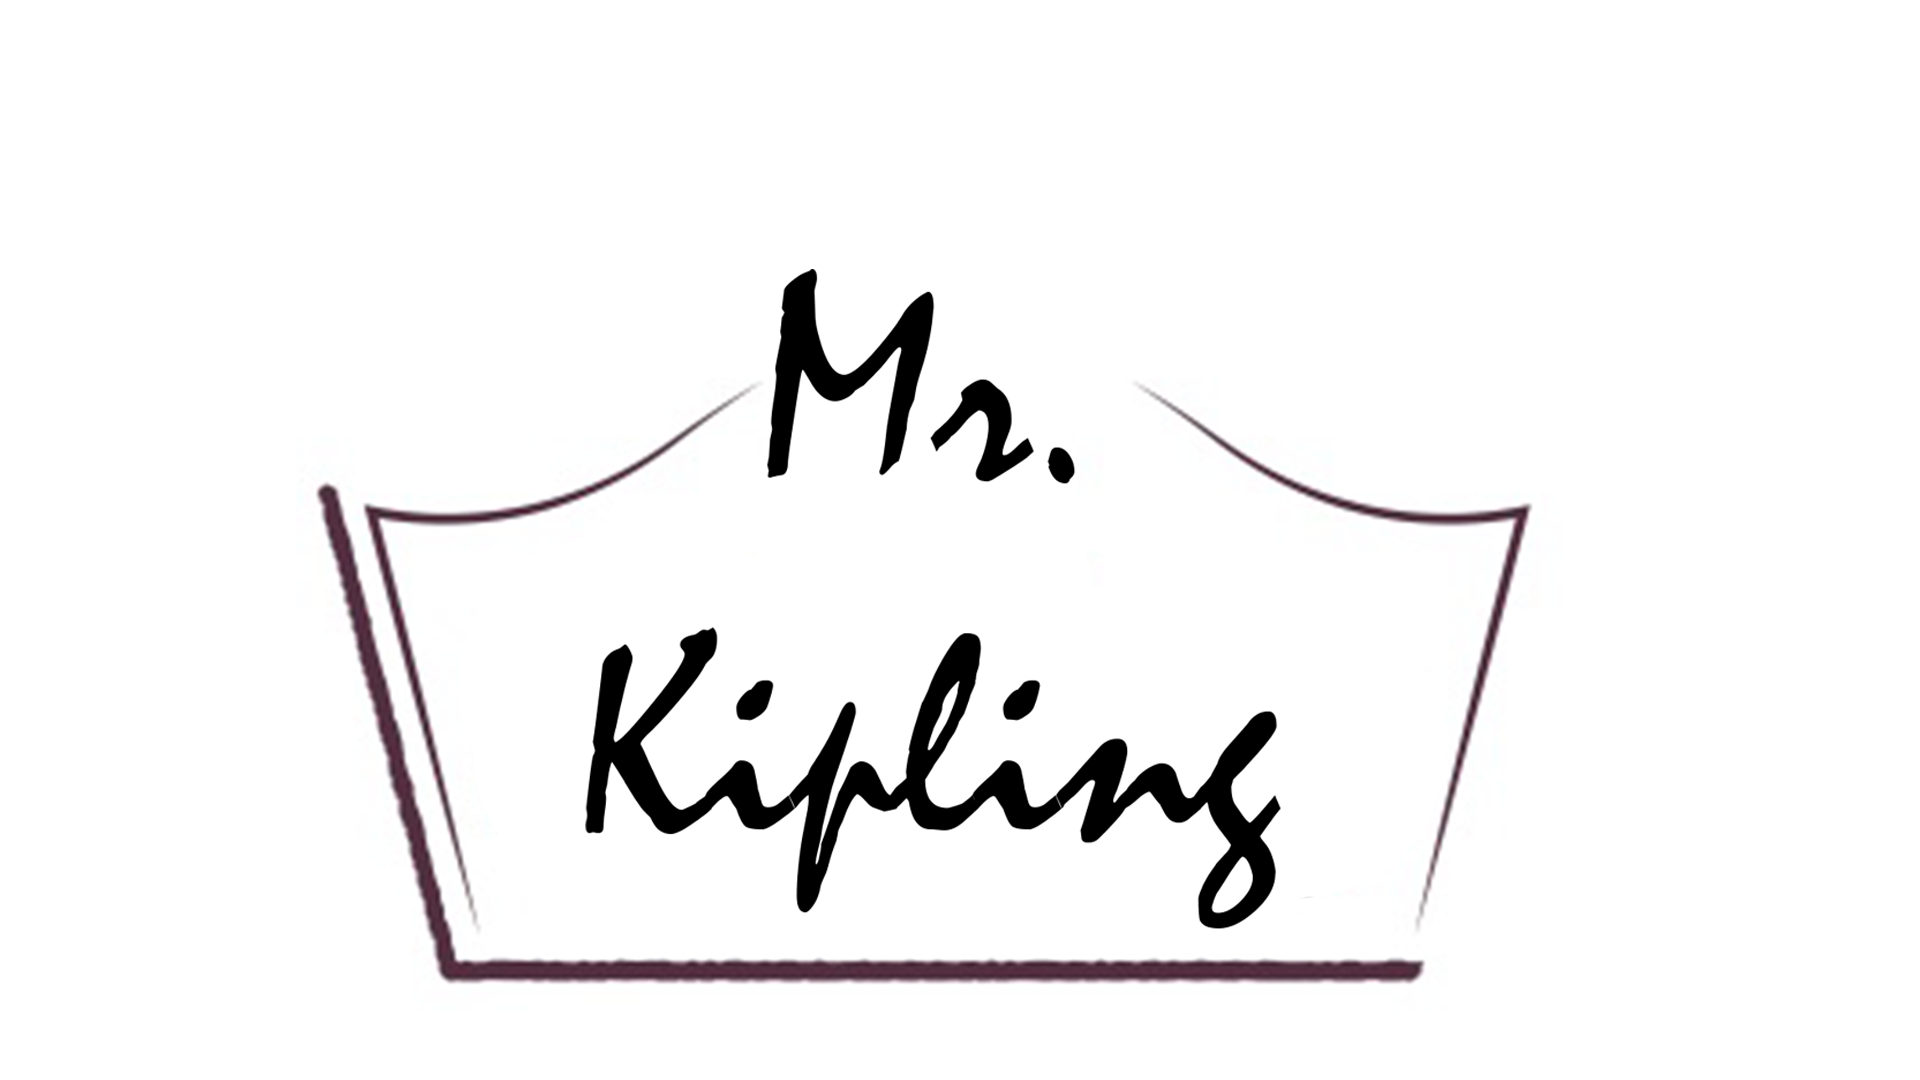 Mr Kipling Logo